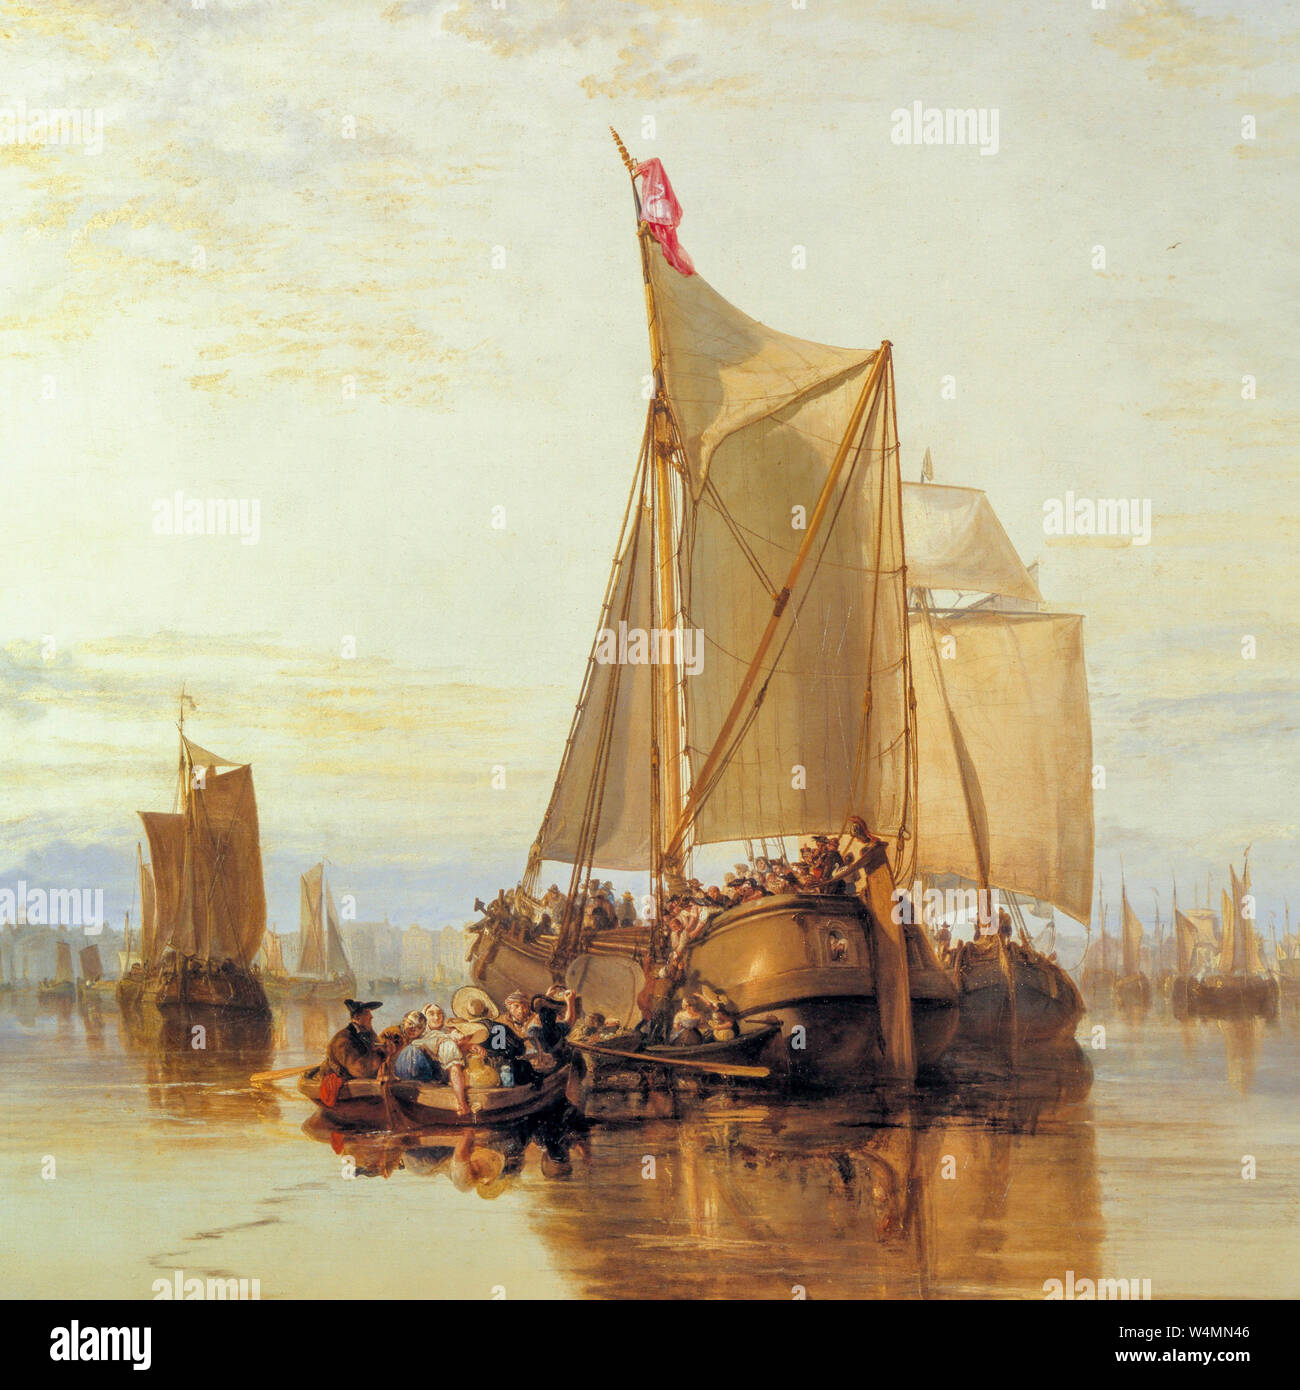 JMW Turner, peinture, dort ou Dordrecht, dort Packet-Boat de Rotterdam, encalminé, détail, 1818 Banque D'Images